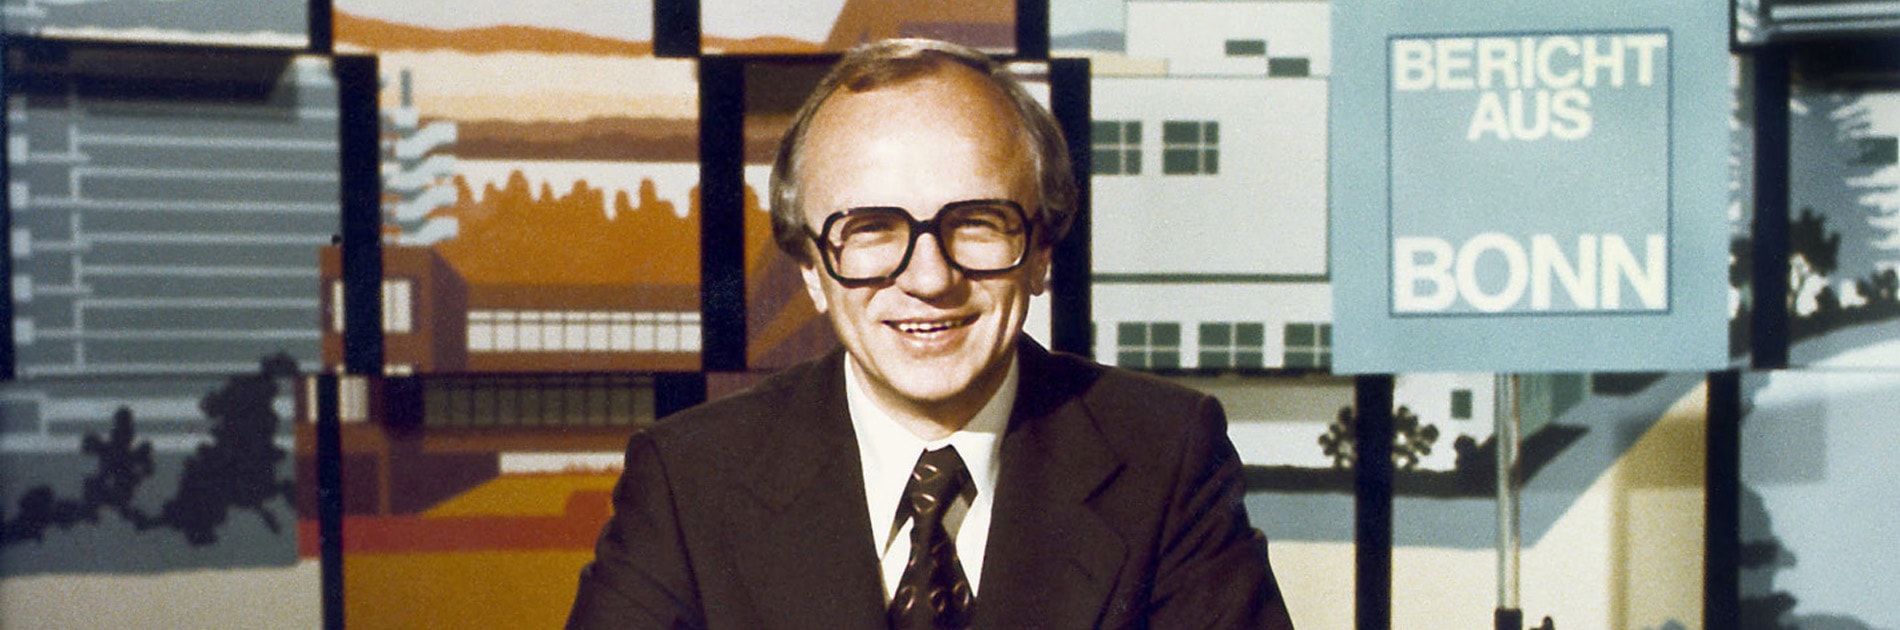 Friedrich Nowottny moderiert den Bericht aus Bonn, 1977 | Bildquelle: WDR